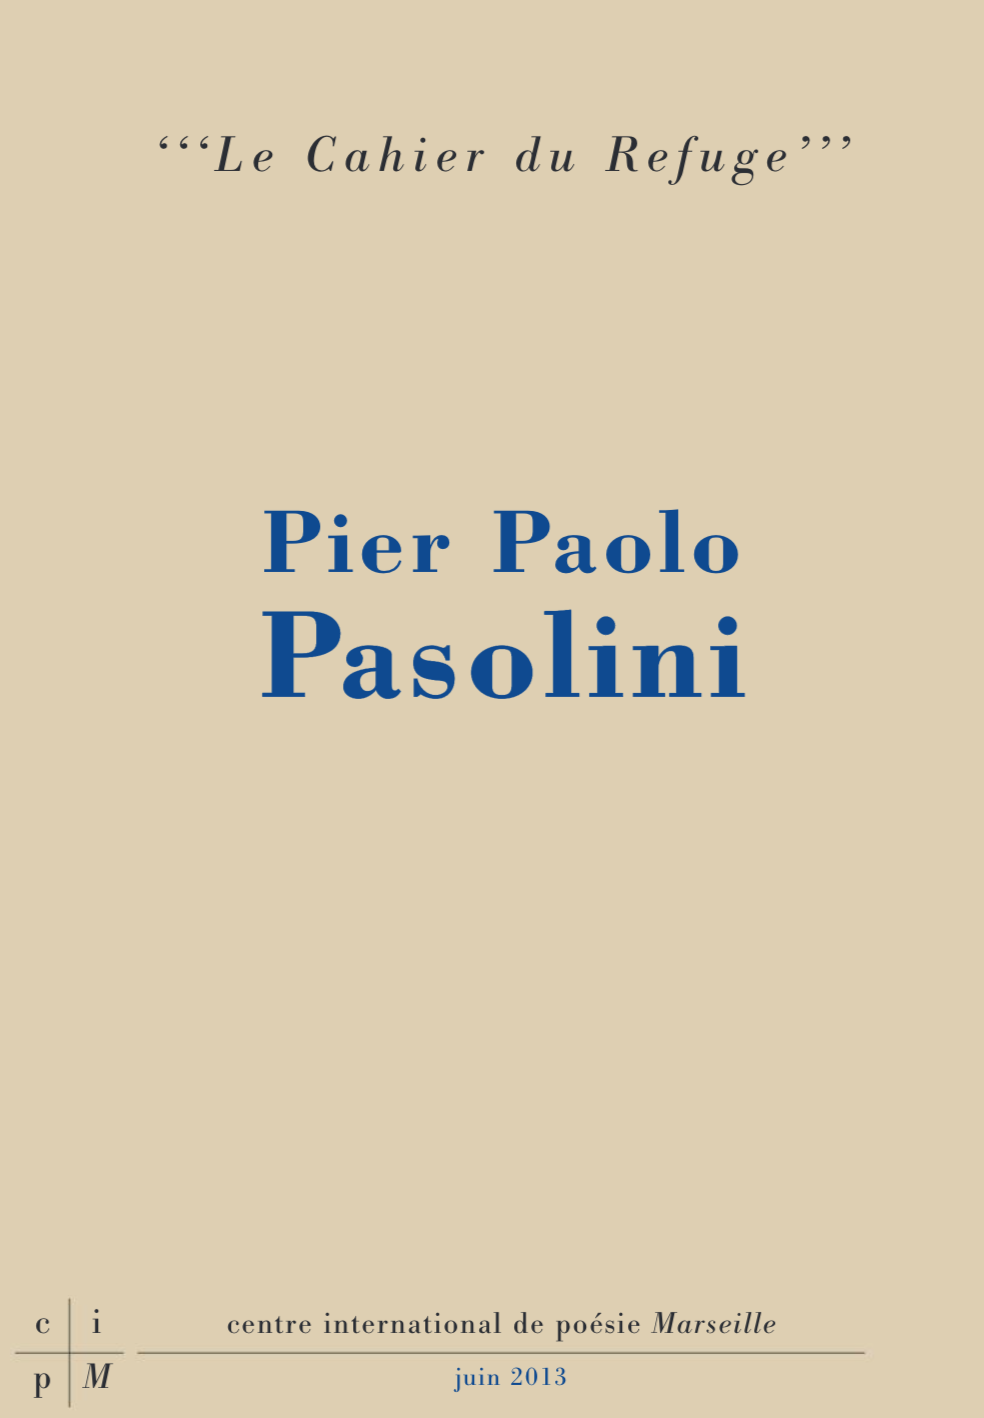 Pierre Paolo Pasolini